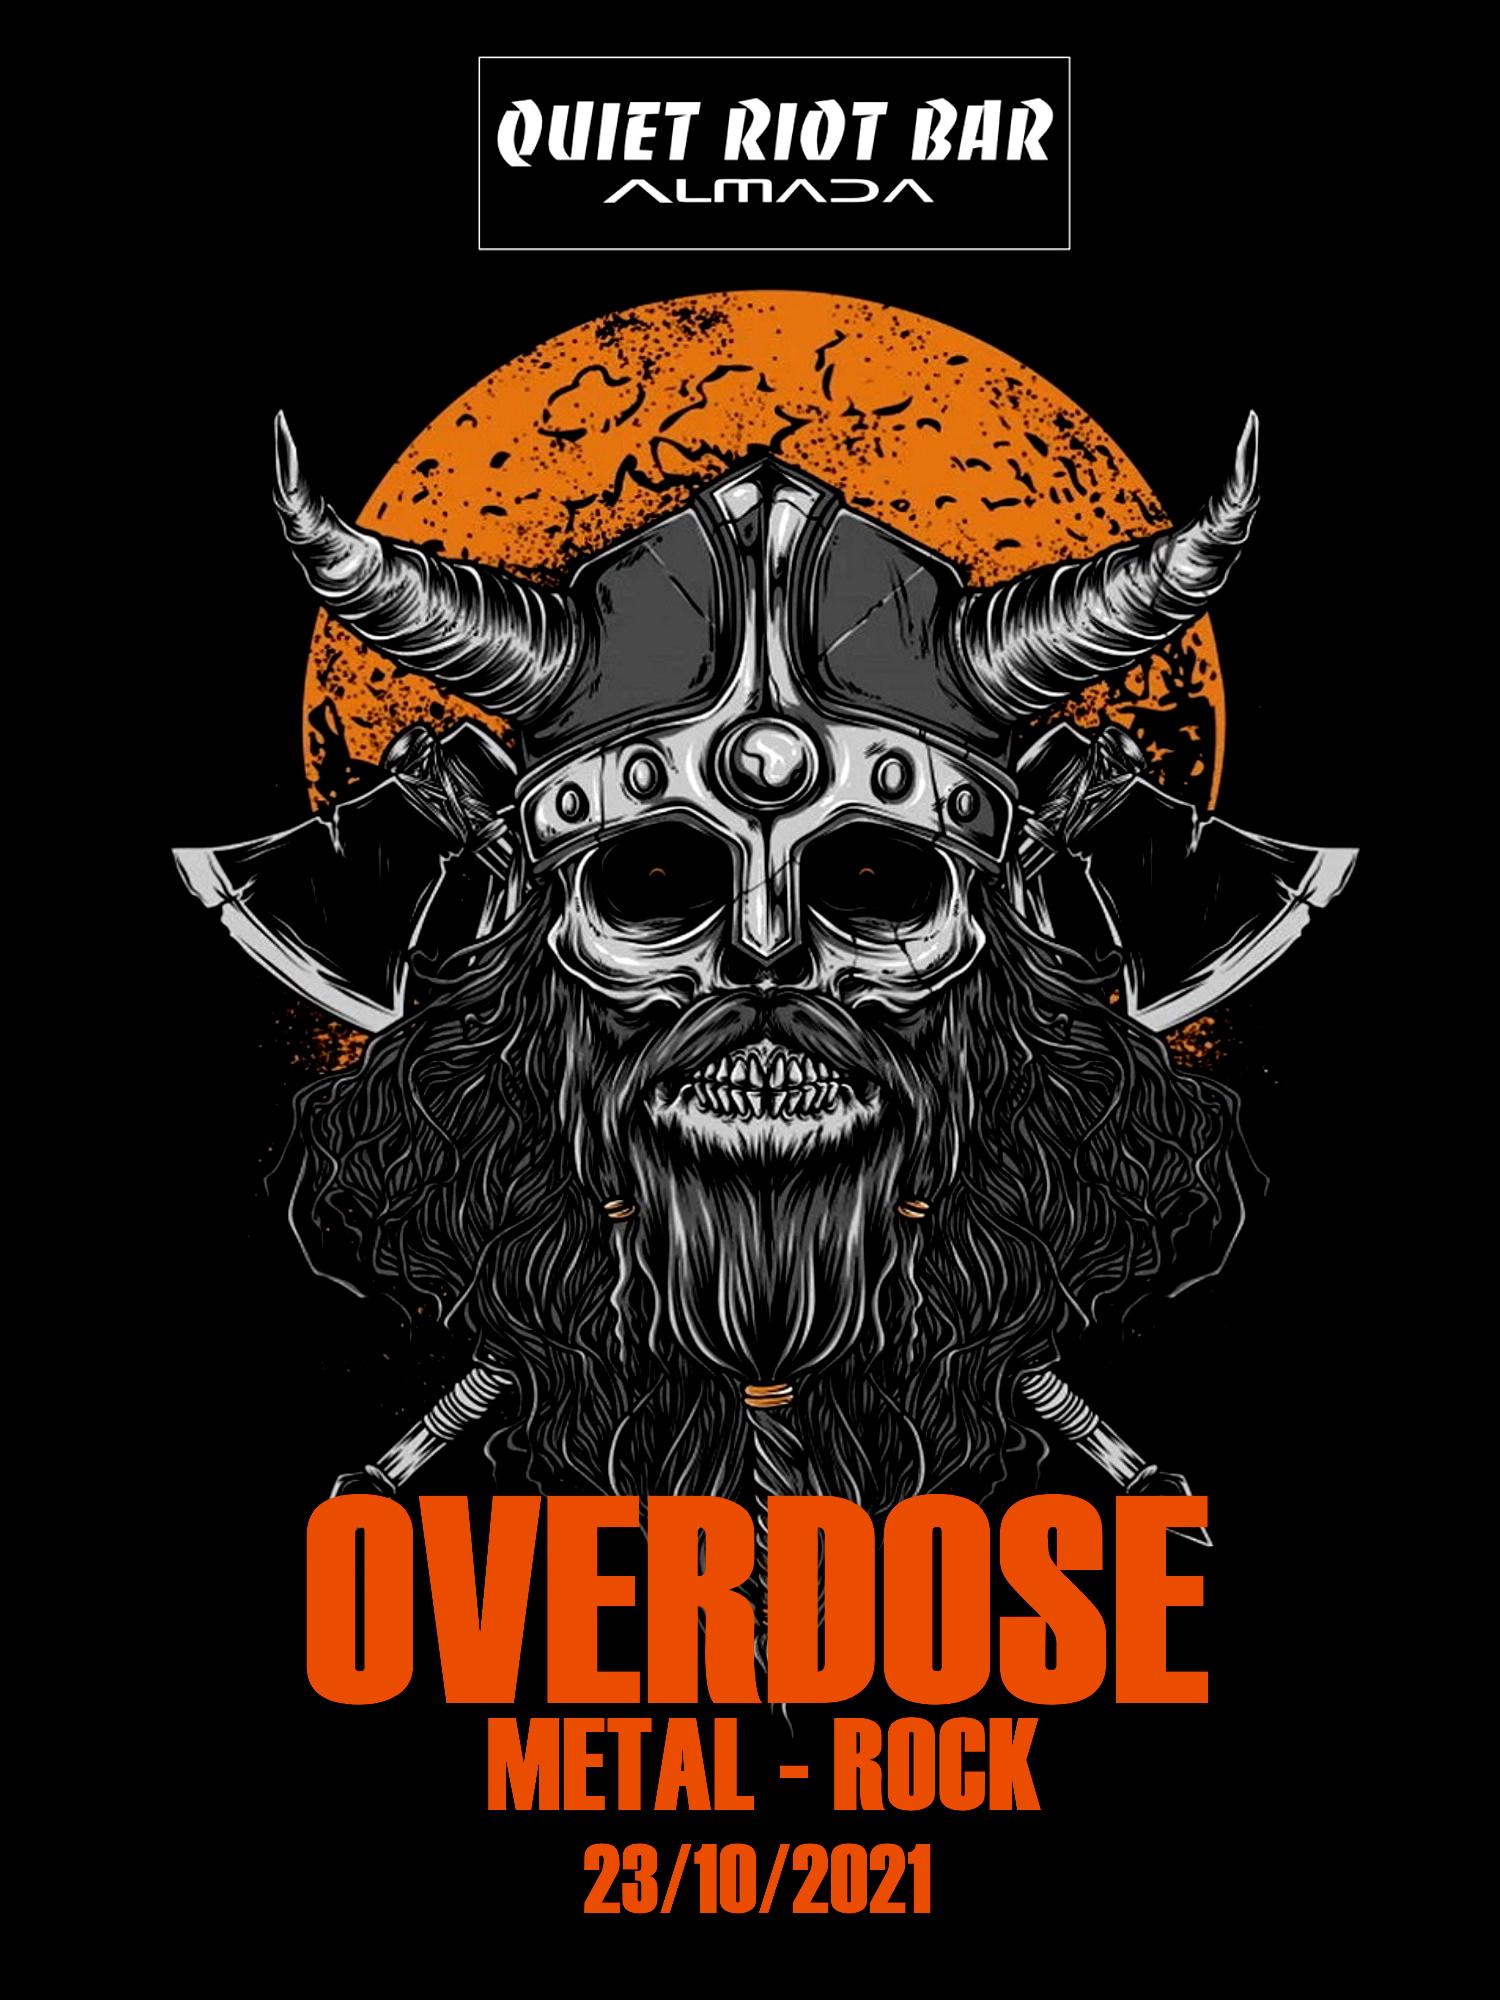 Overdose @ Quiet Riot Bar